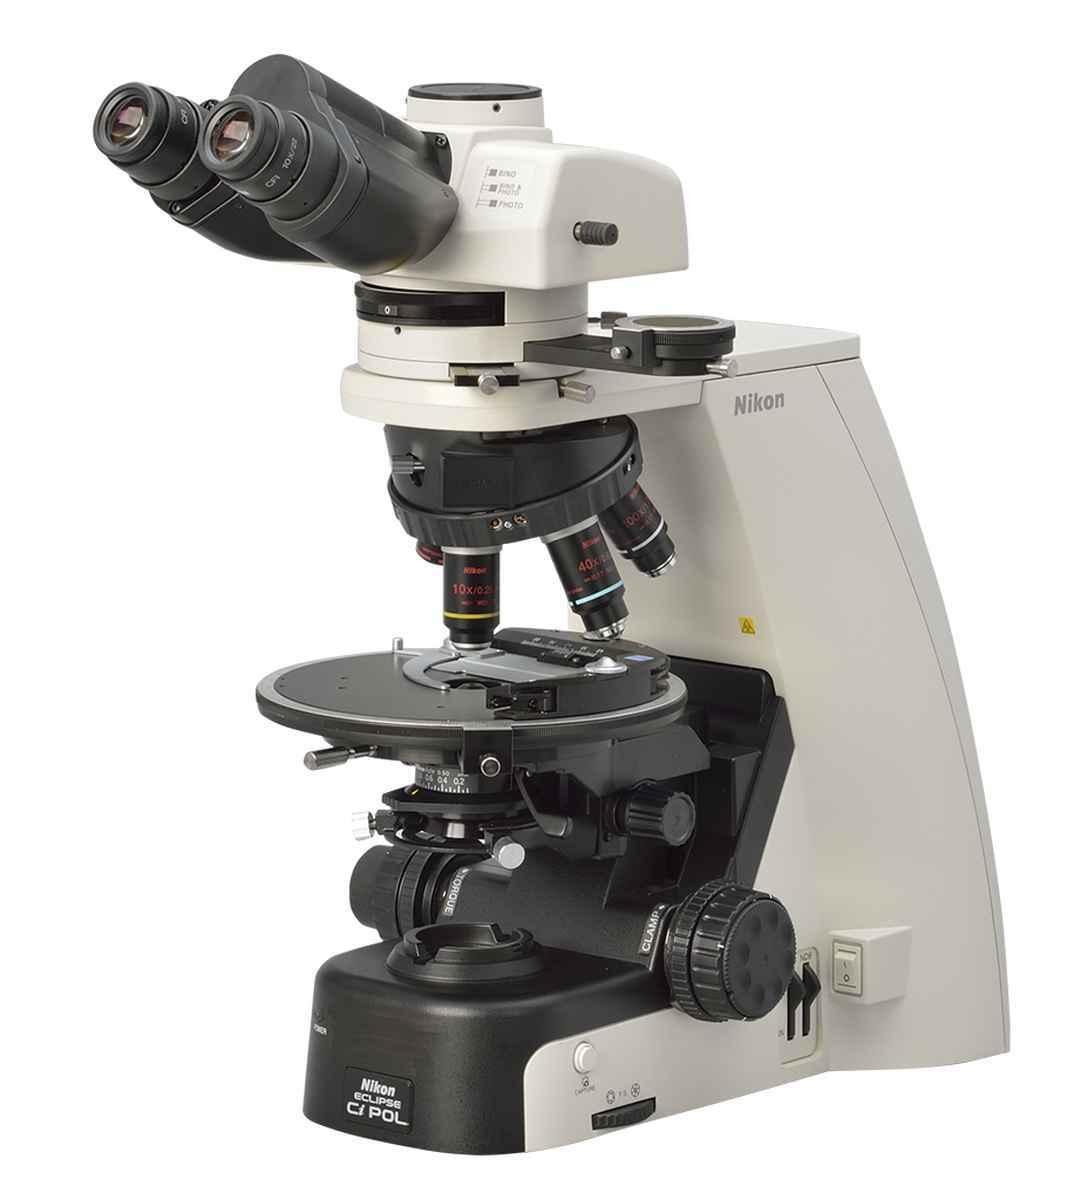 尼康Eclipse Ci-POL偏光显微镜的图片